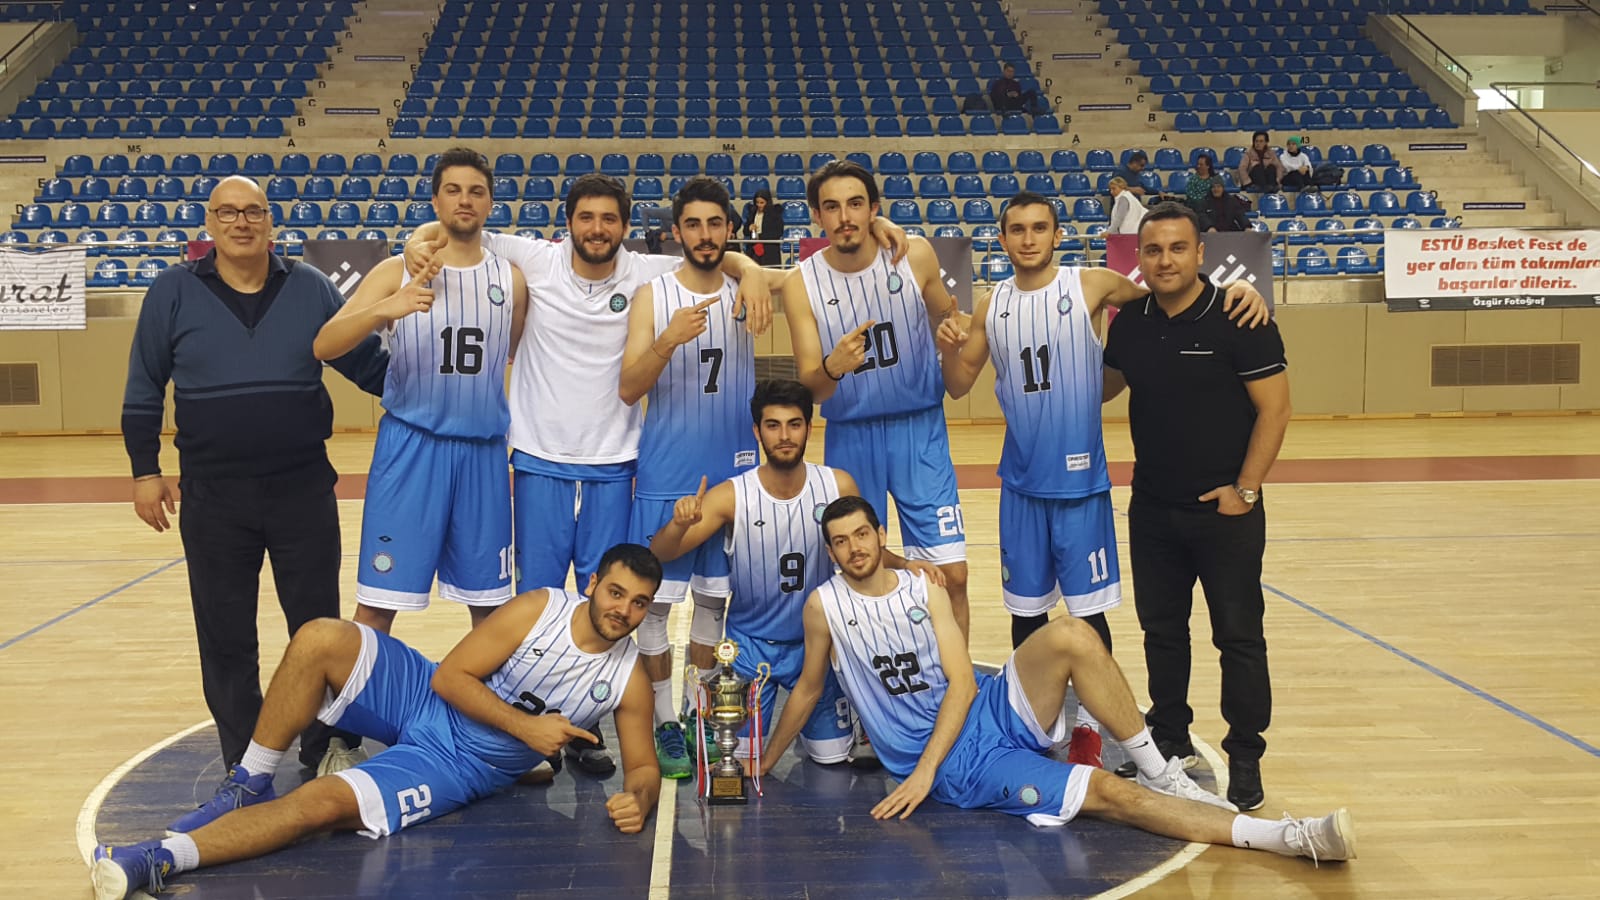  Bursa Uludağ Üniversitesi Erkek Basketbol Takımı Şampiyon olarak birinci lige yükseldi. 